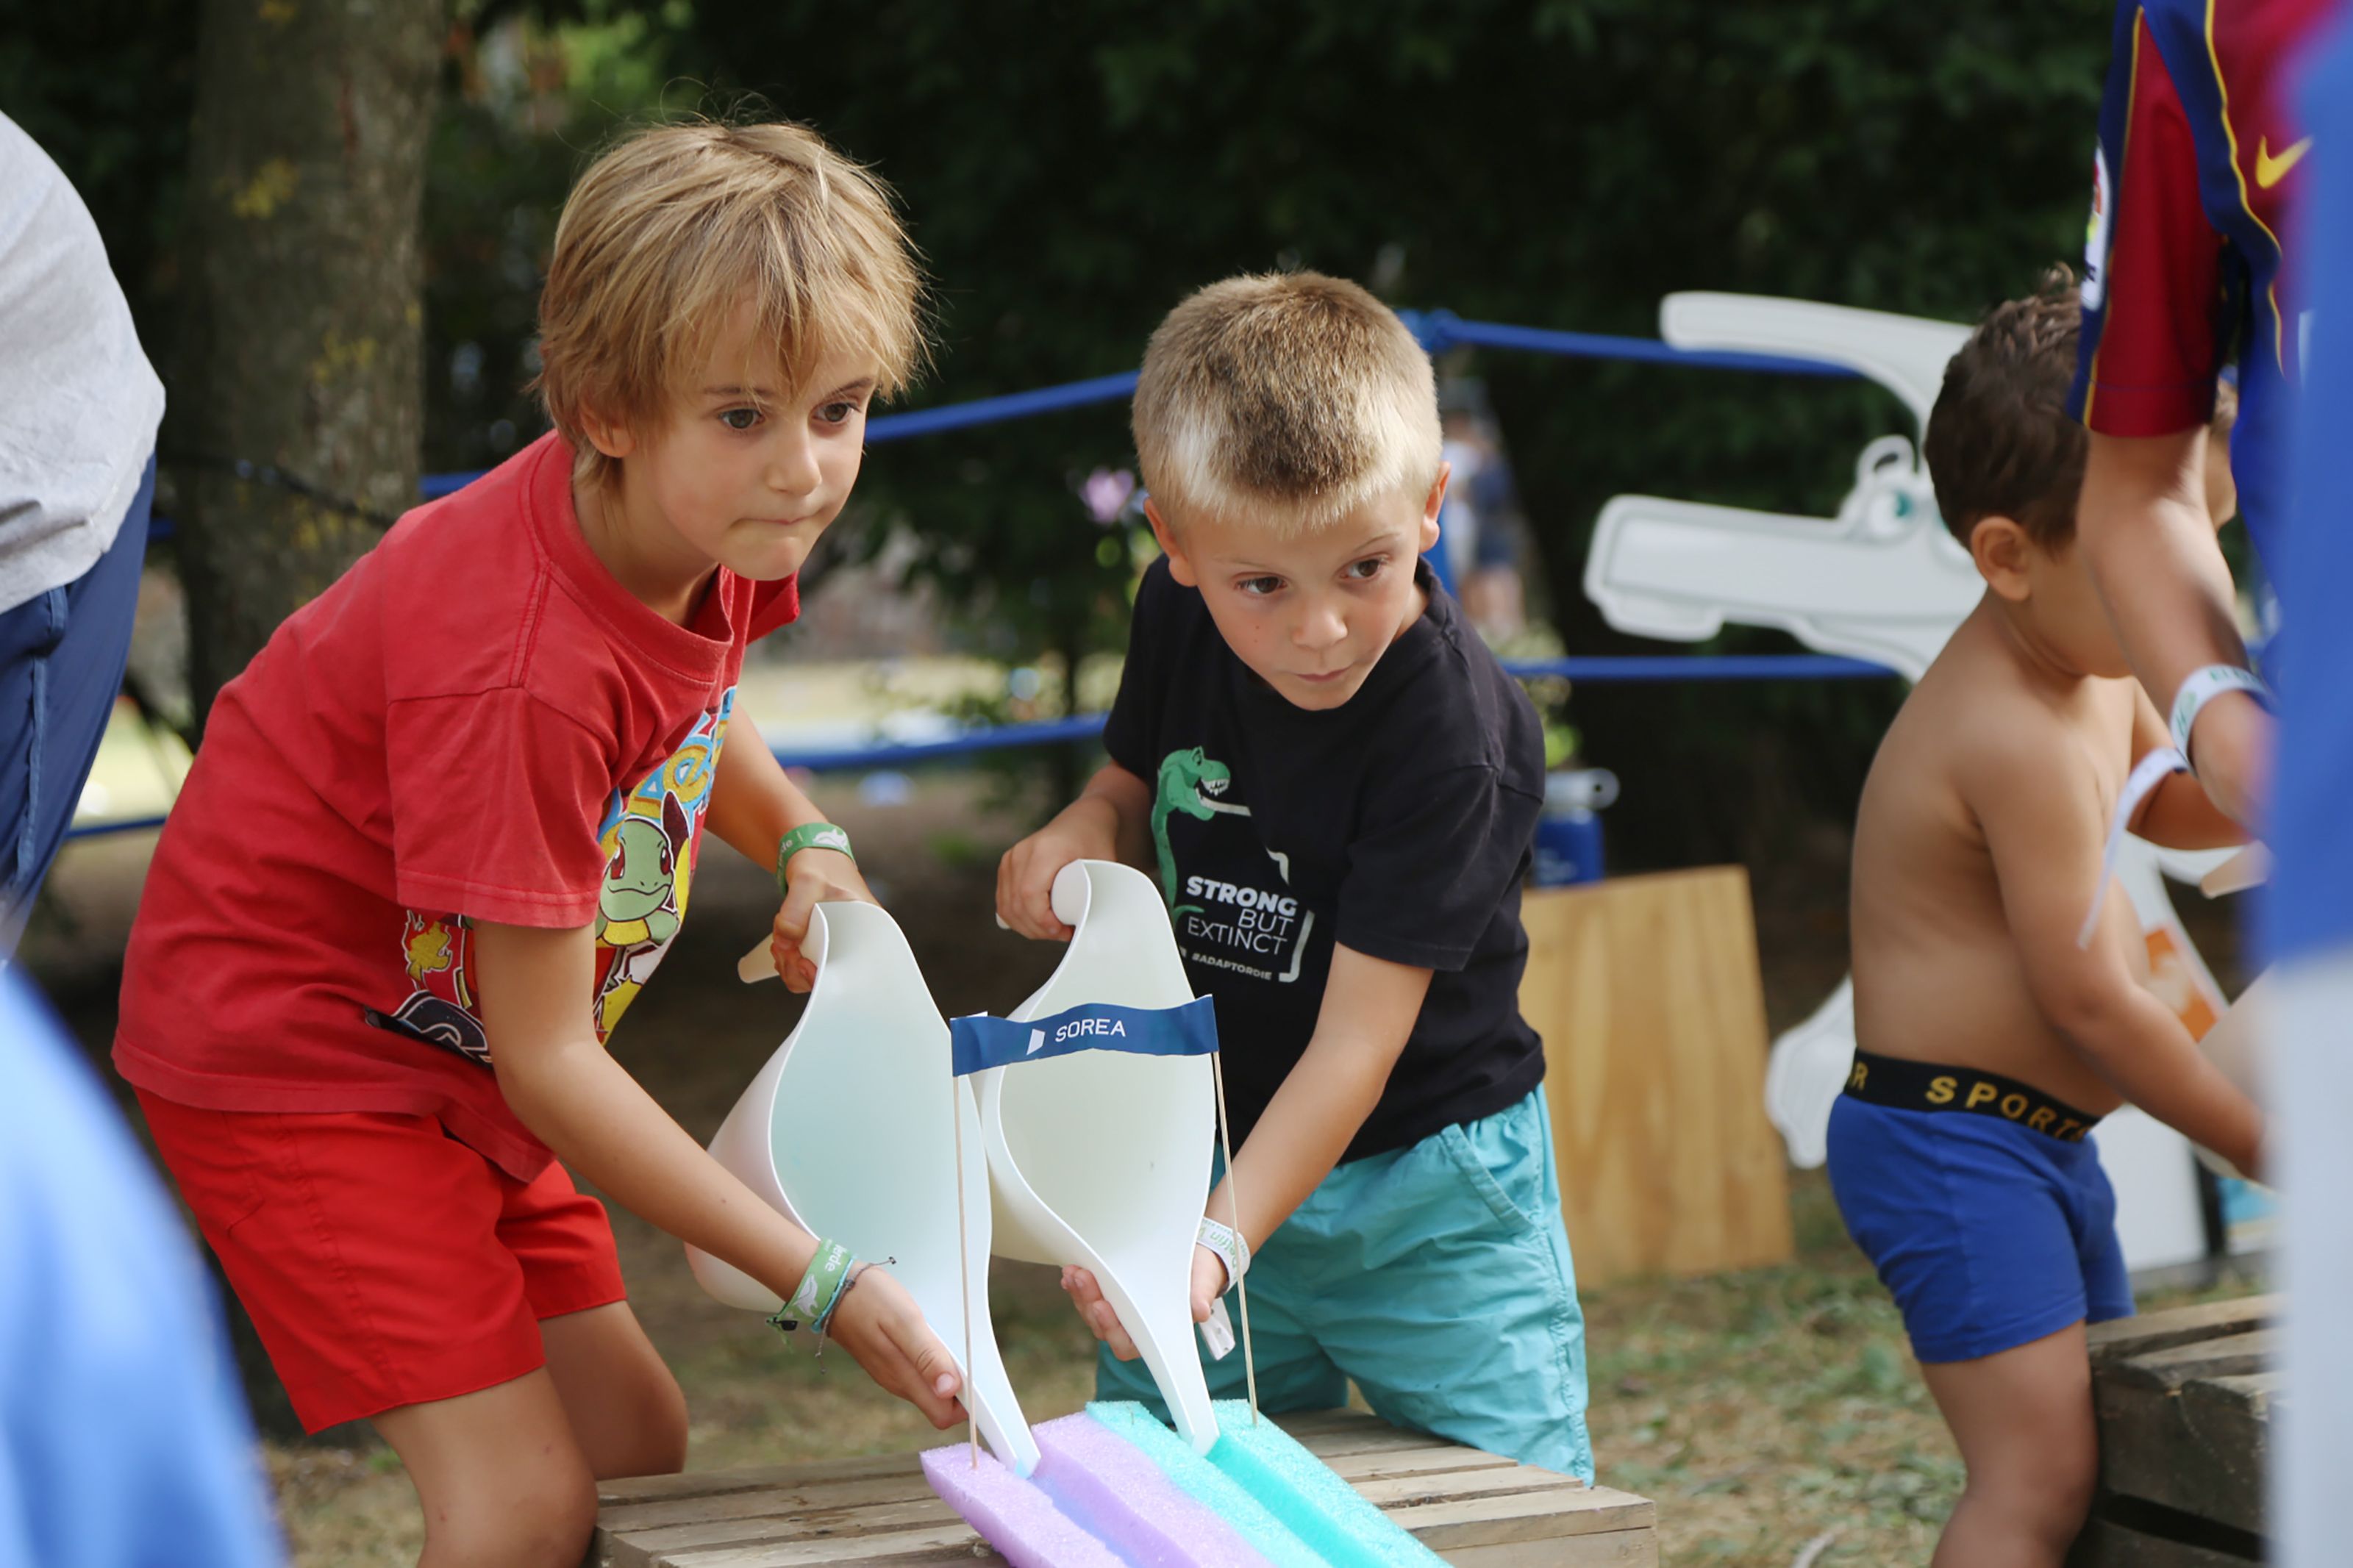 Jocs infantils amb aigua a la festa de l'aigua a la Festa de l'Esport al Carrer. FOTO: Anna Bassa